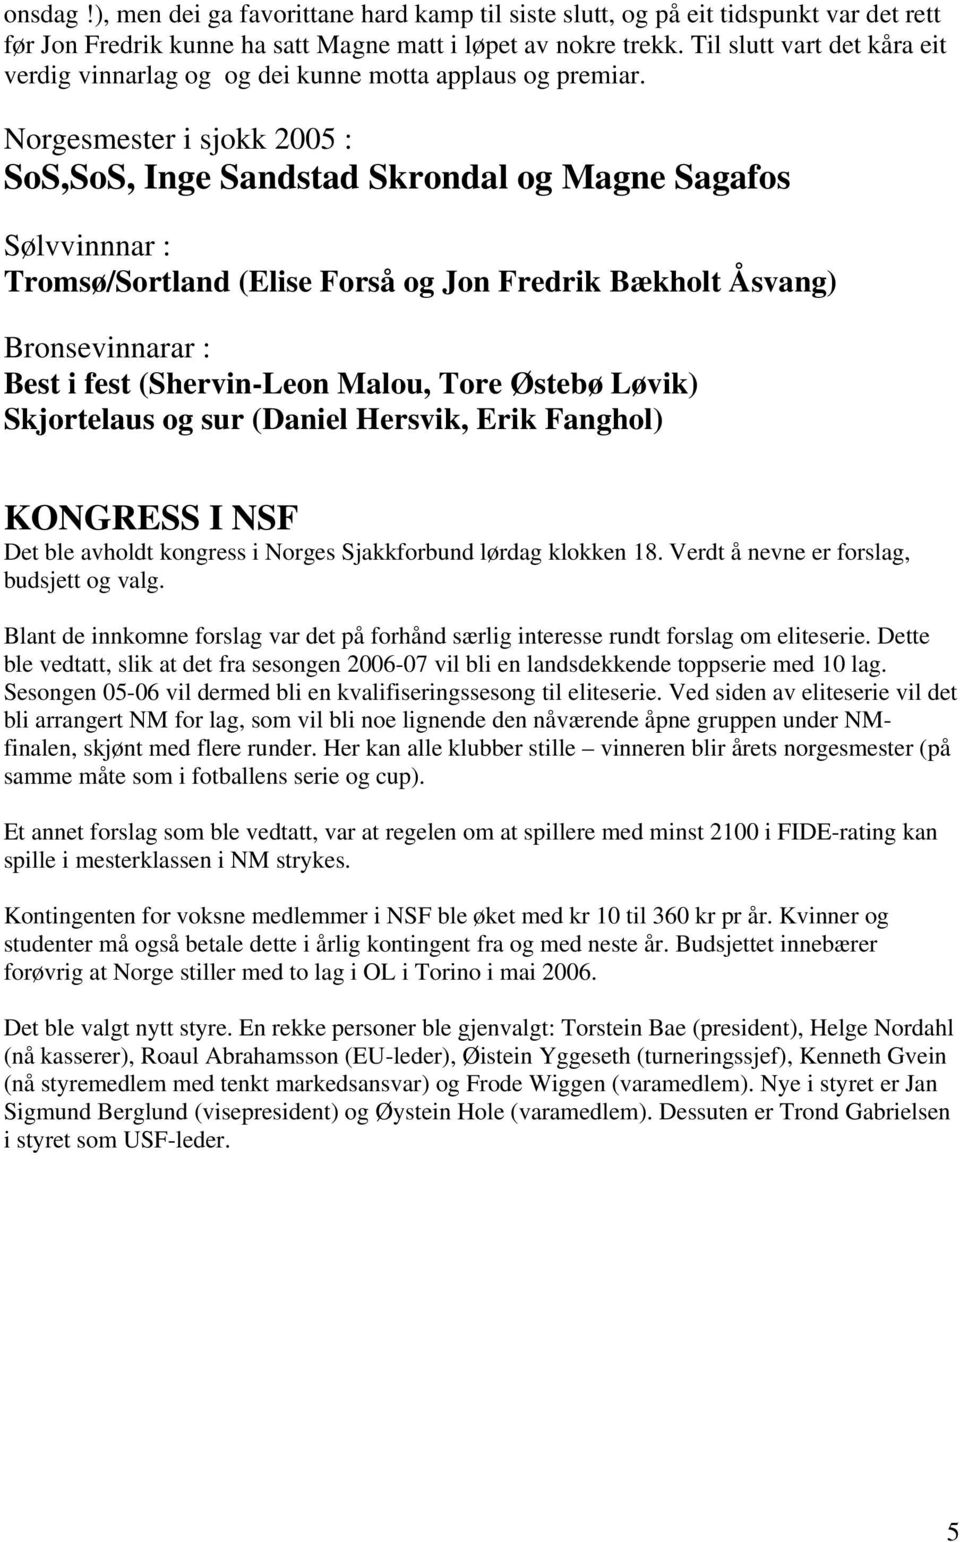 Norgesmester i sjokk 2005 : SoS,SoS, Inge Sandstad Skrondal og Magne Sagafos Sølvvinnnar : Tromsø/Sortland (Elise Forså og Jon Fredrik Bækholt Åsvang) Bronsevinnarar : Best i fest (Shervin-Leon